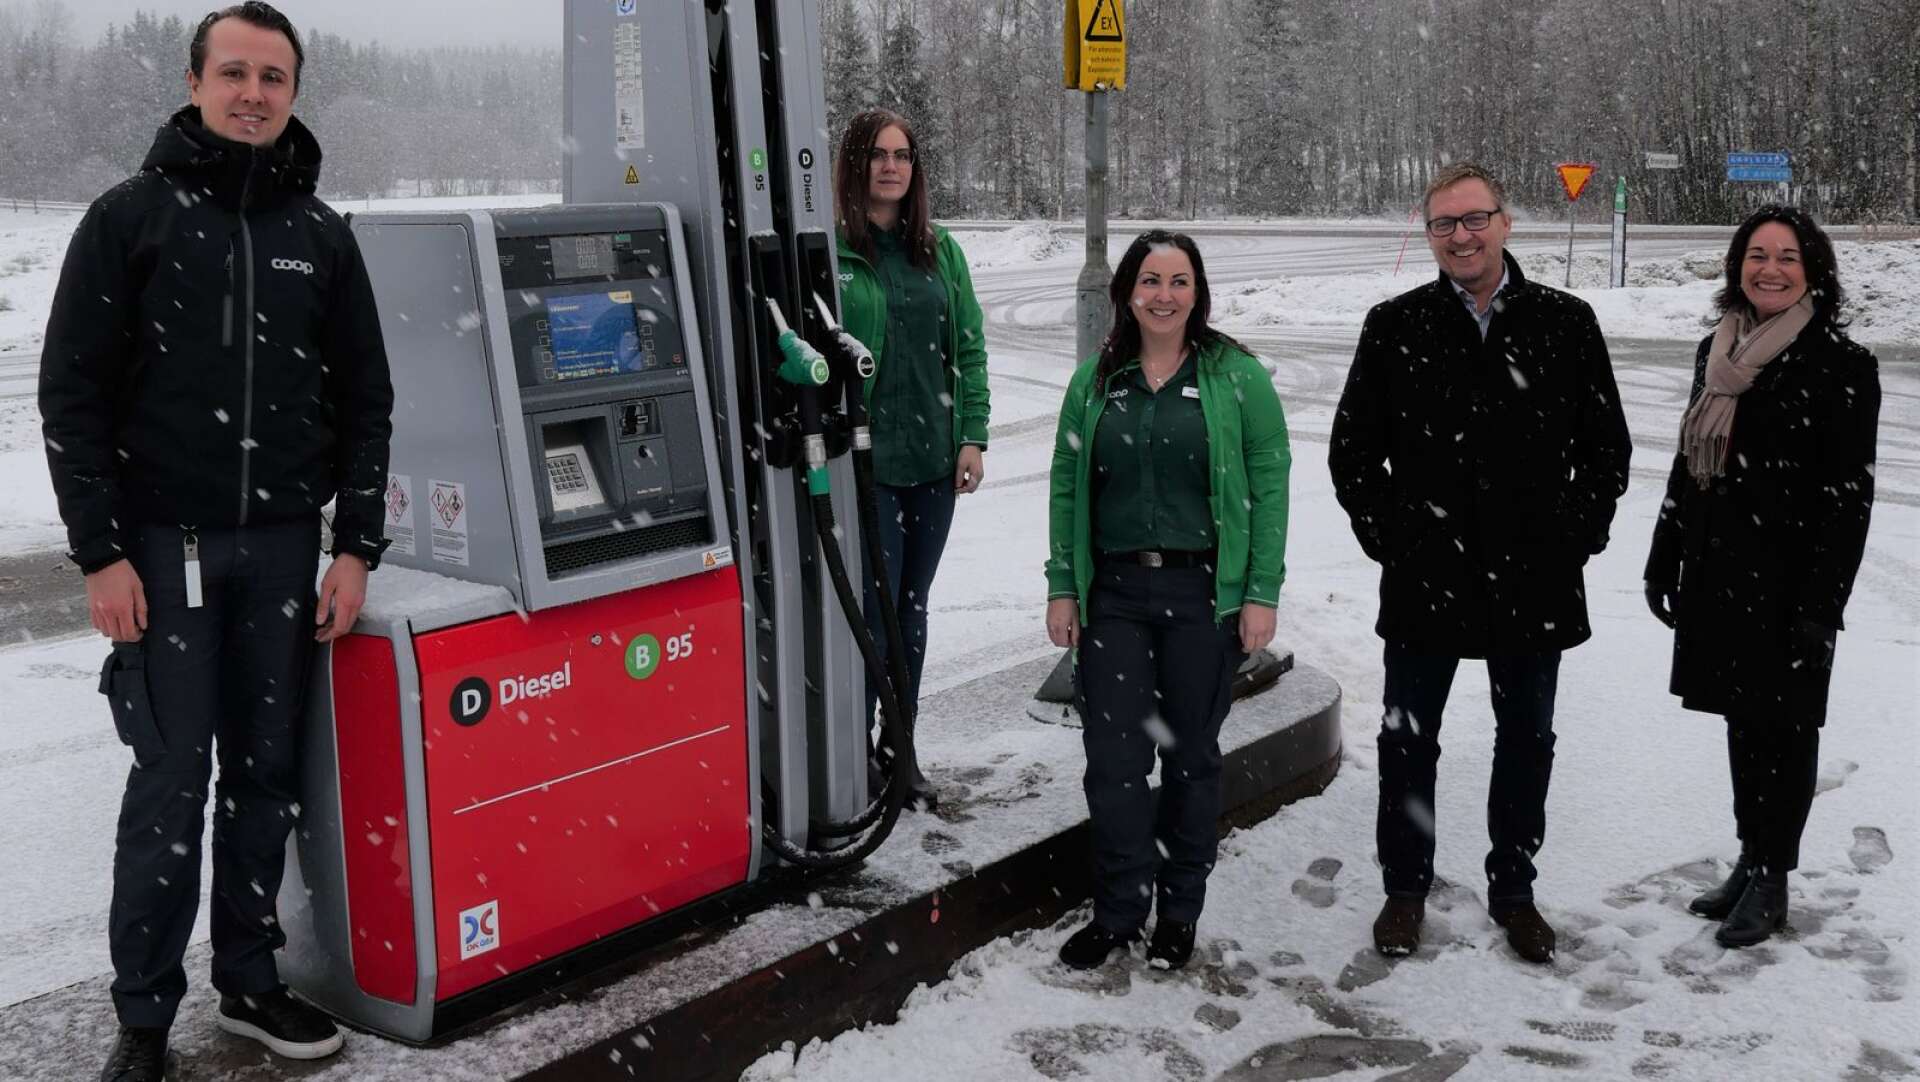 Tack vare ett samarbete mellan OK Värmland, Coop Värmland och Region Värmland kommer tre värmländska orter att erbjudss nya bensinpumpar under våren.